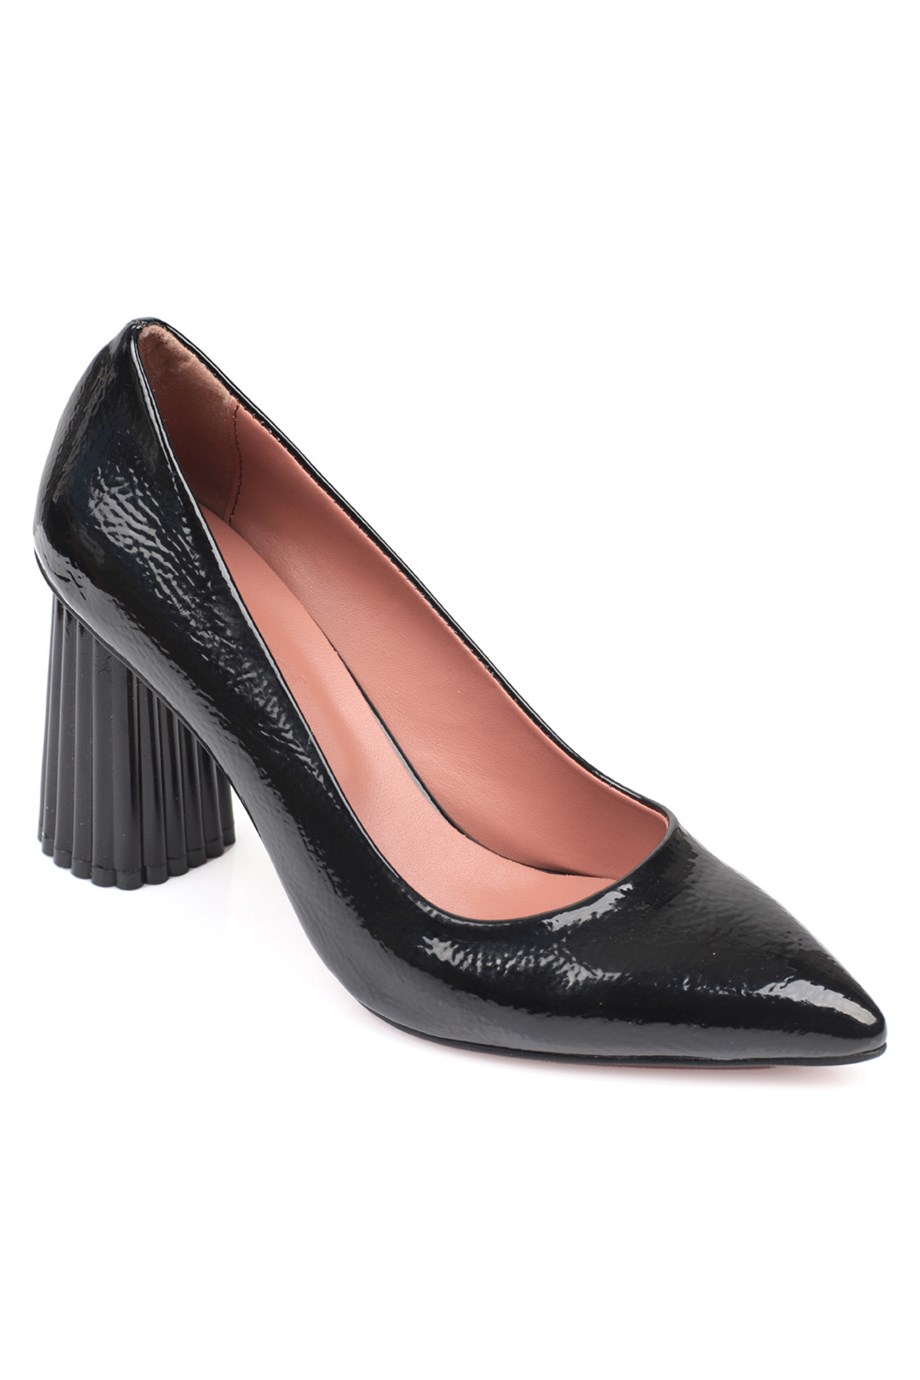 Capone Siyah Yüksek Kalın Topuklu Kadın Ayakkabı | Caponestore